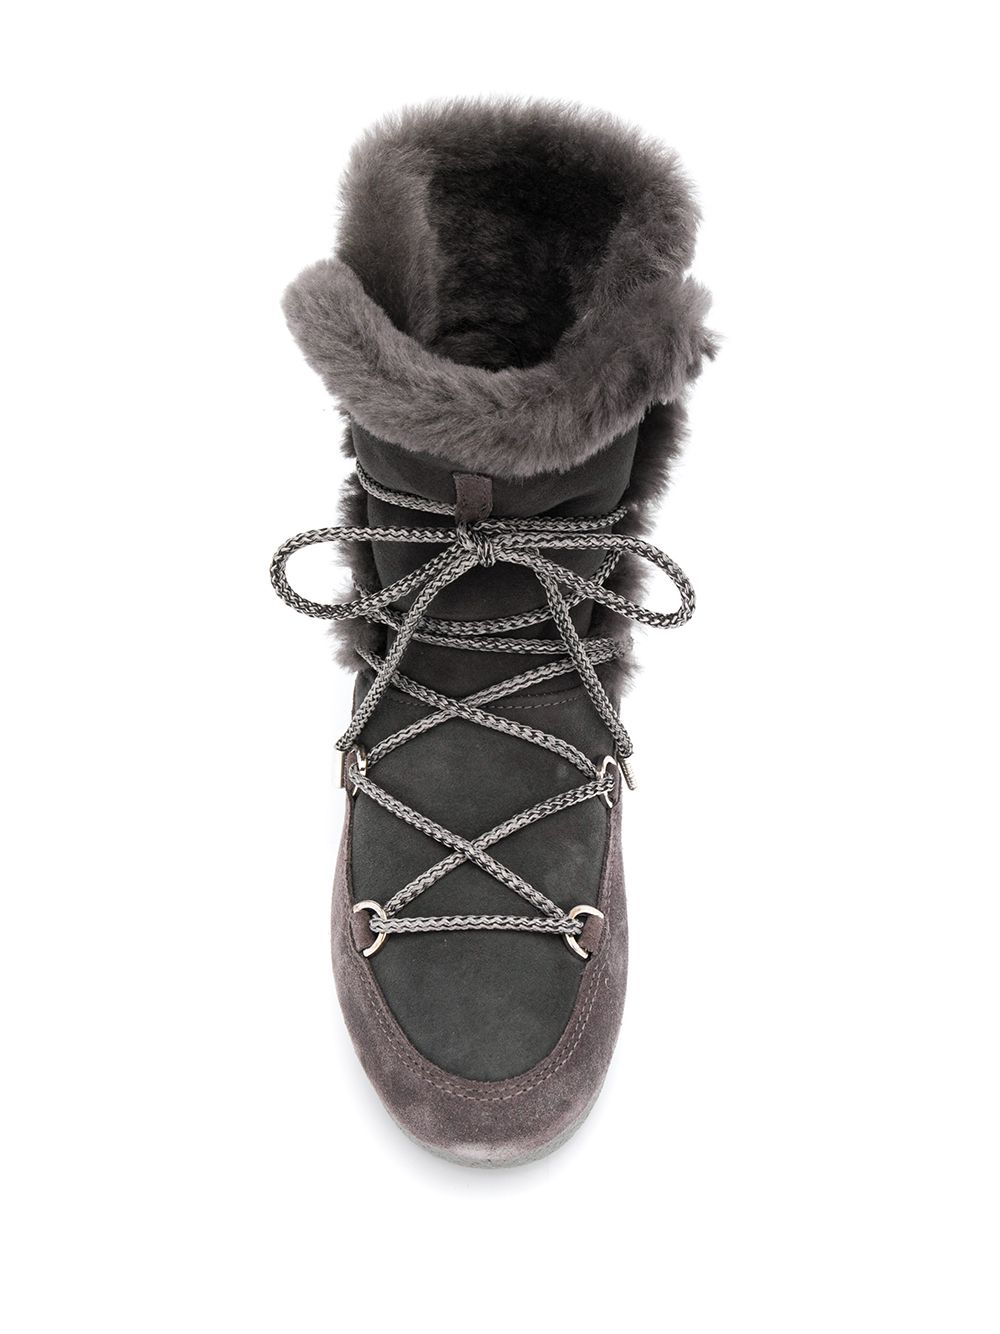 фото Moon boot зимние ботинки с оторочкой из овчины